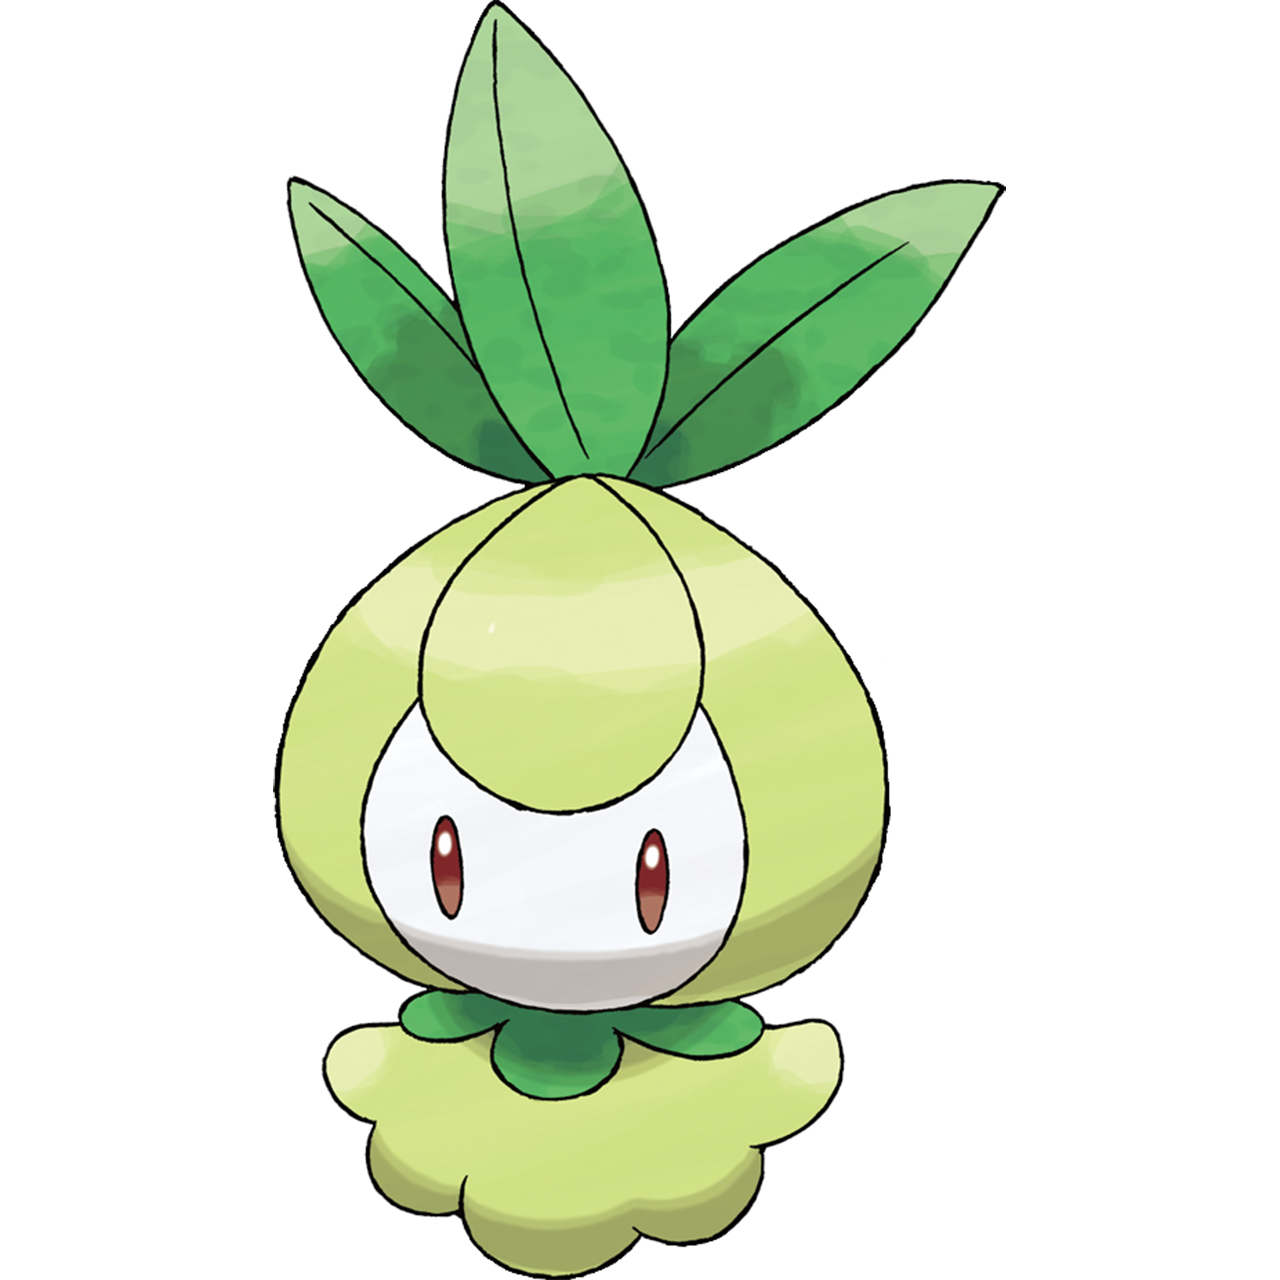 Unova Pokédex, Pokémon Wiki